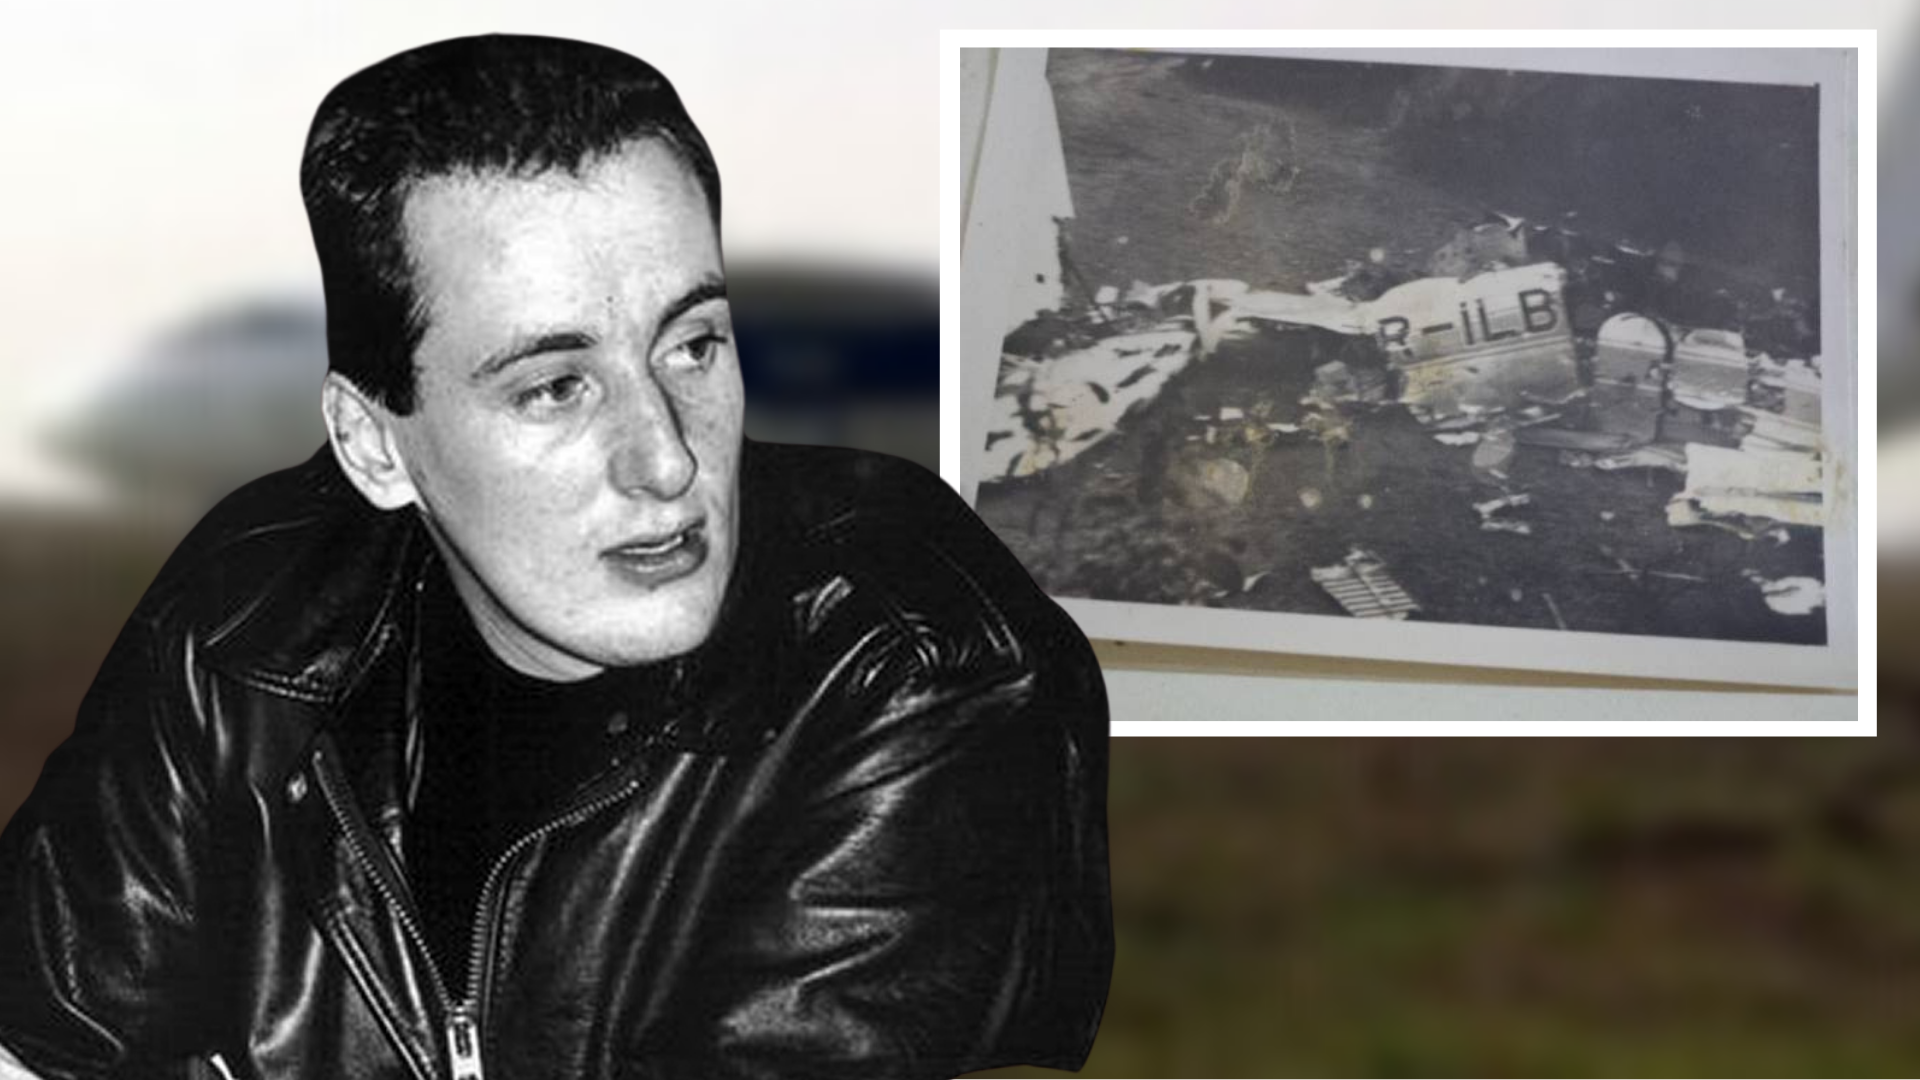 Misterul tragediei aviatice din 28 decembrie 1989: "Erau urme de  proiectil". A fost doborât premeditat zborul București-Belgrad?